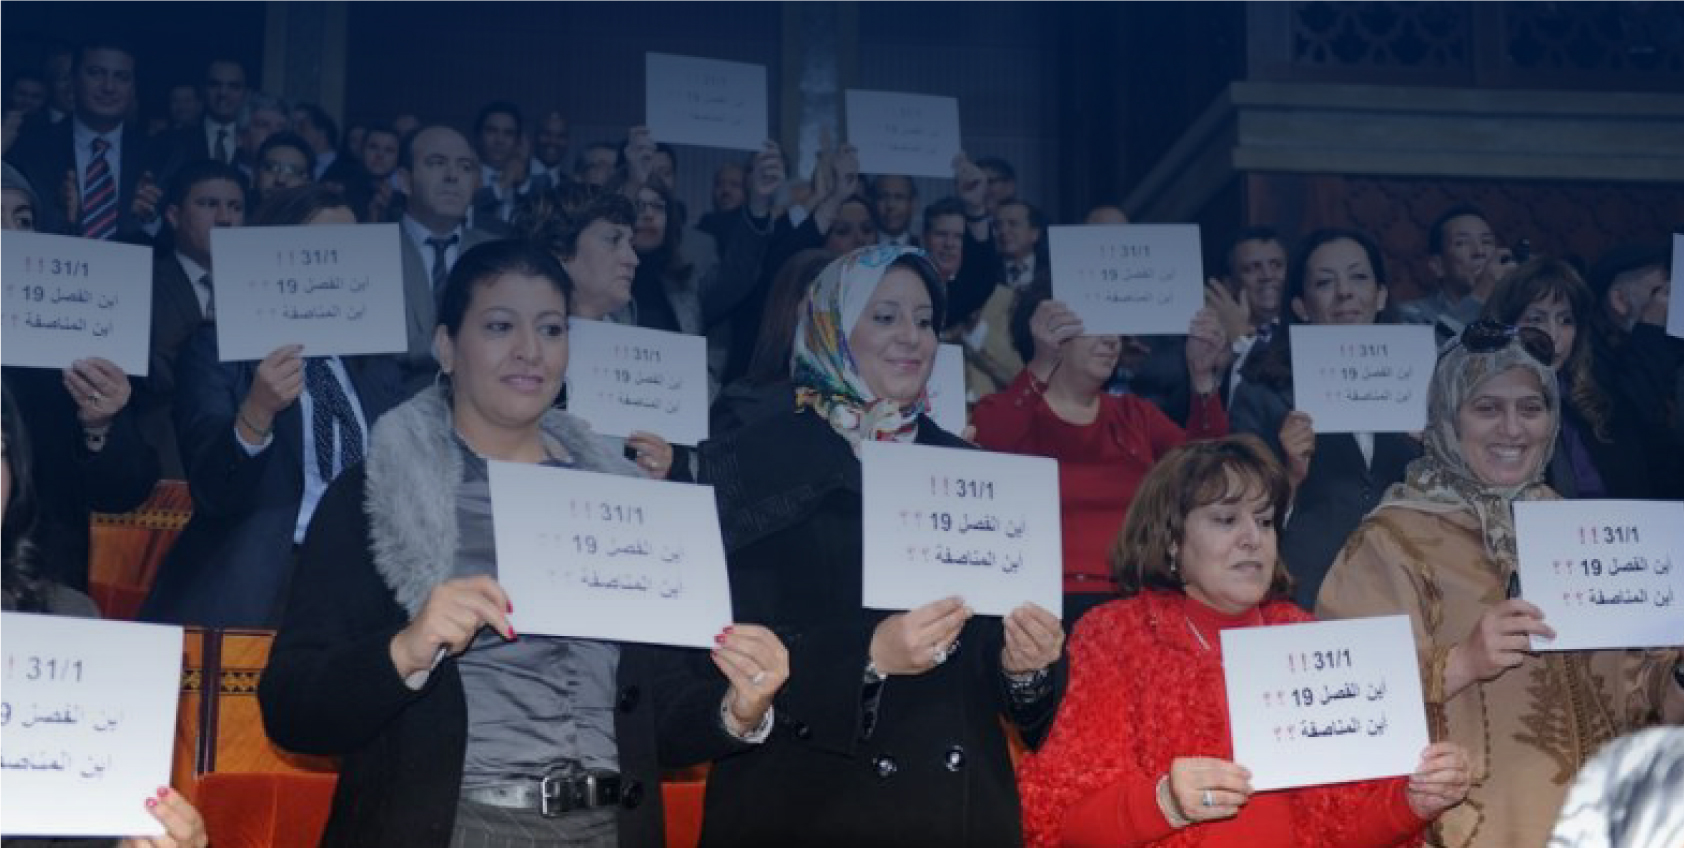 المشاركة السياسية للمرأة المغربية بين الواقع والآفاق